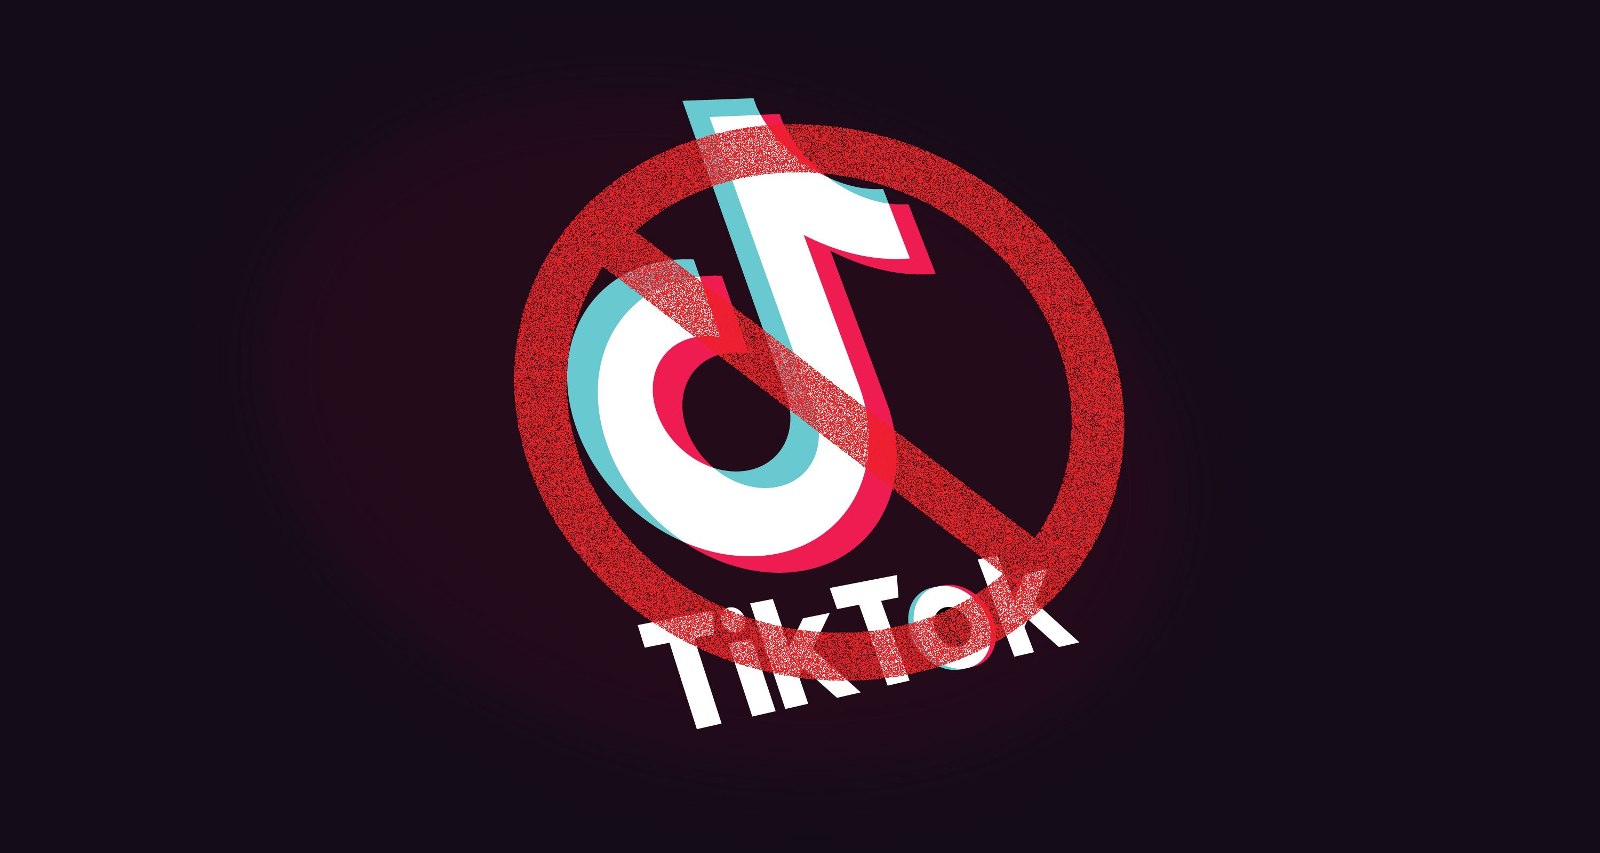 TikTok ban news in India, Australia and the USA